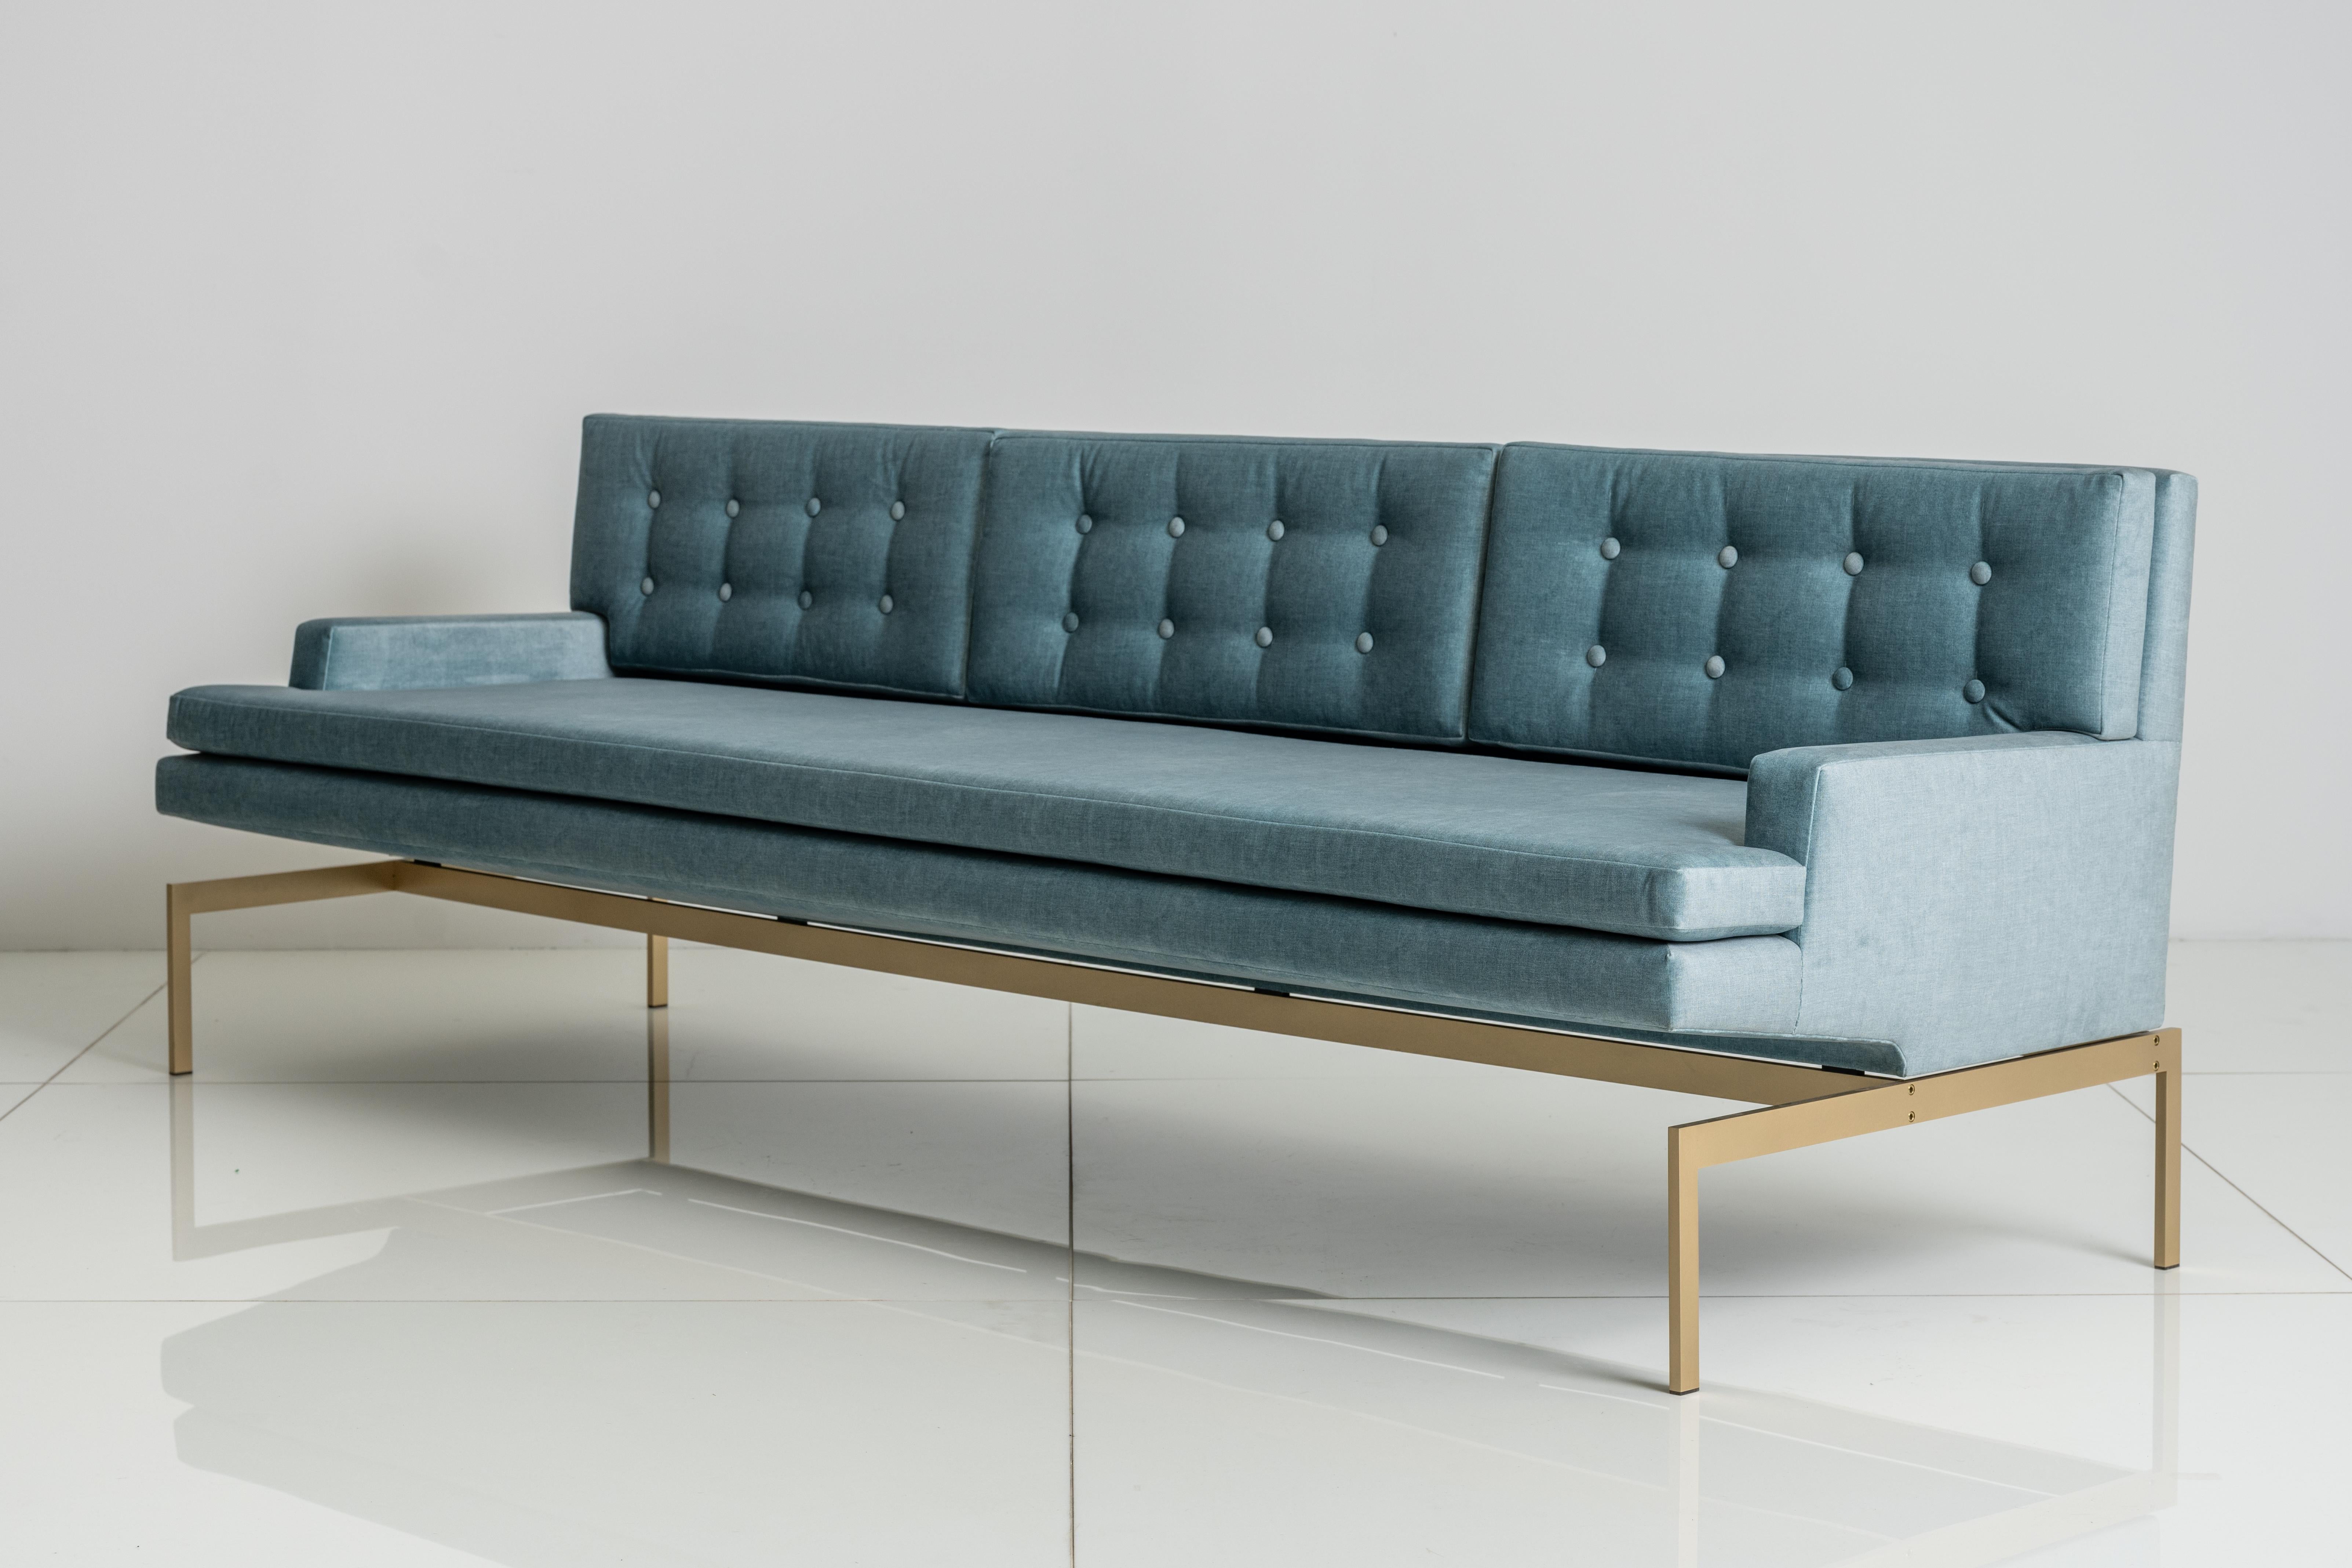 Die Sitzfläche des Mancini-Sofas wurde speziell so konstruiert, dass sie über dem Metallgestell schwebt und ihm eine einzigartige Silhouette verleiht. 

Abgebildet mit einem Sockel aus Silicon Bronze und Blue Velvet.